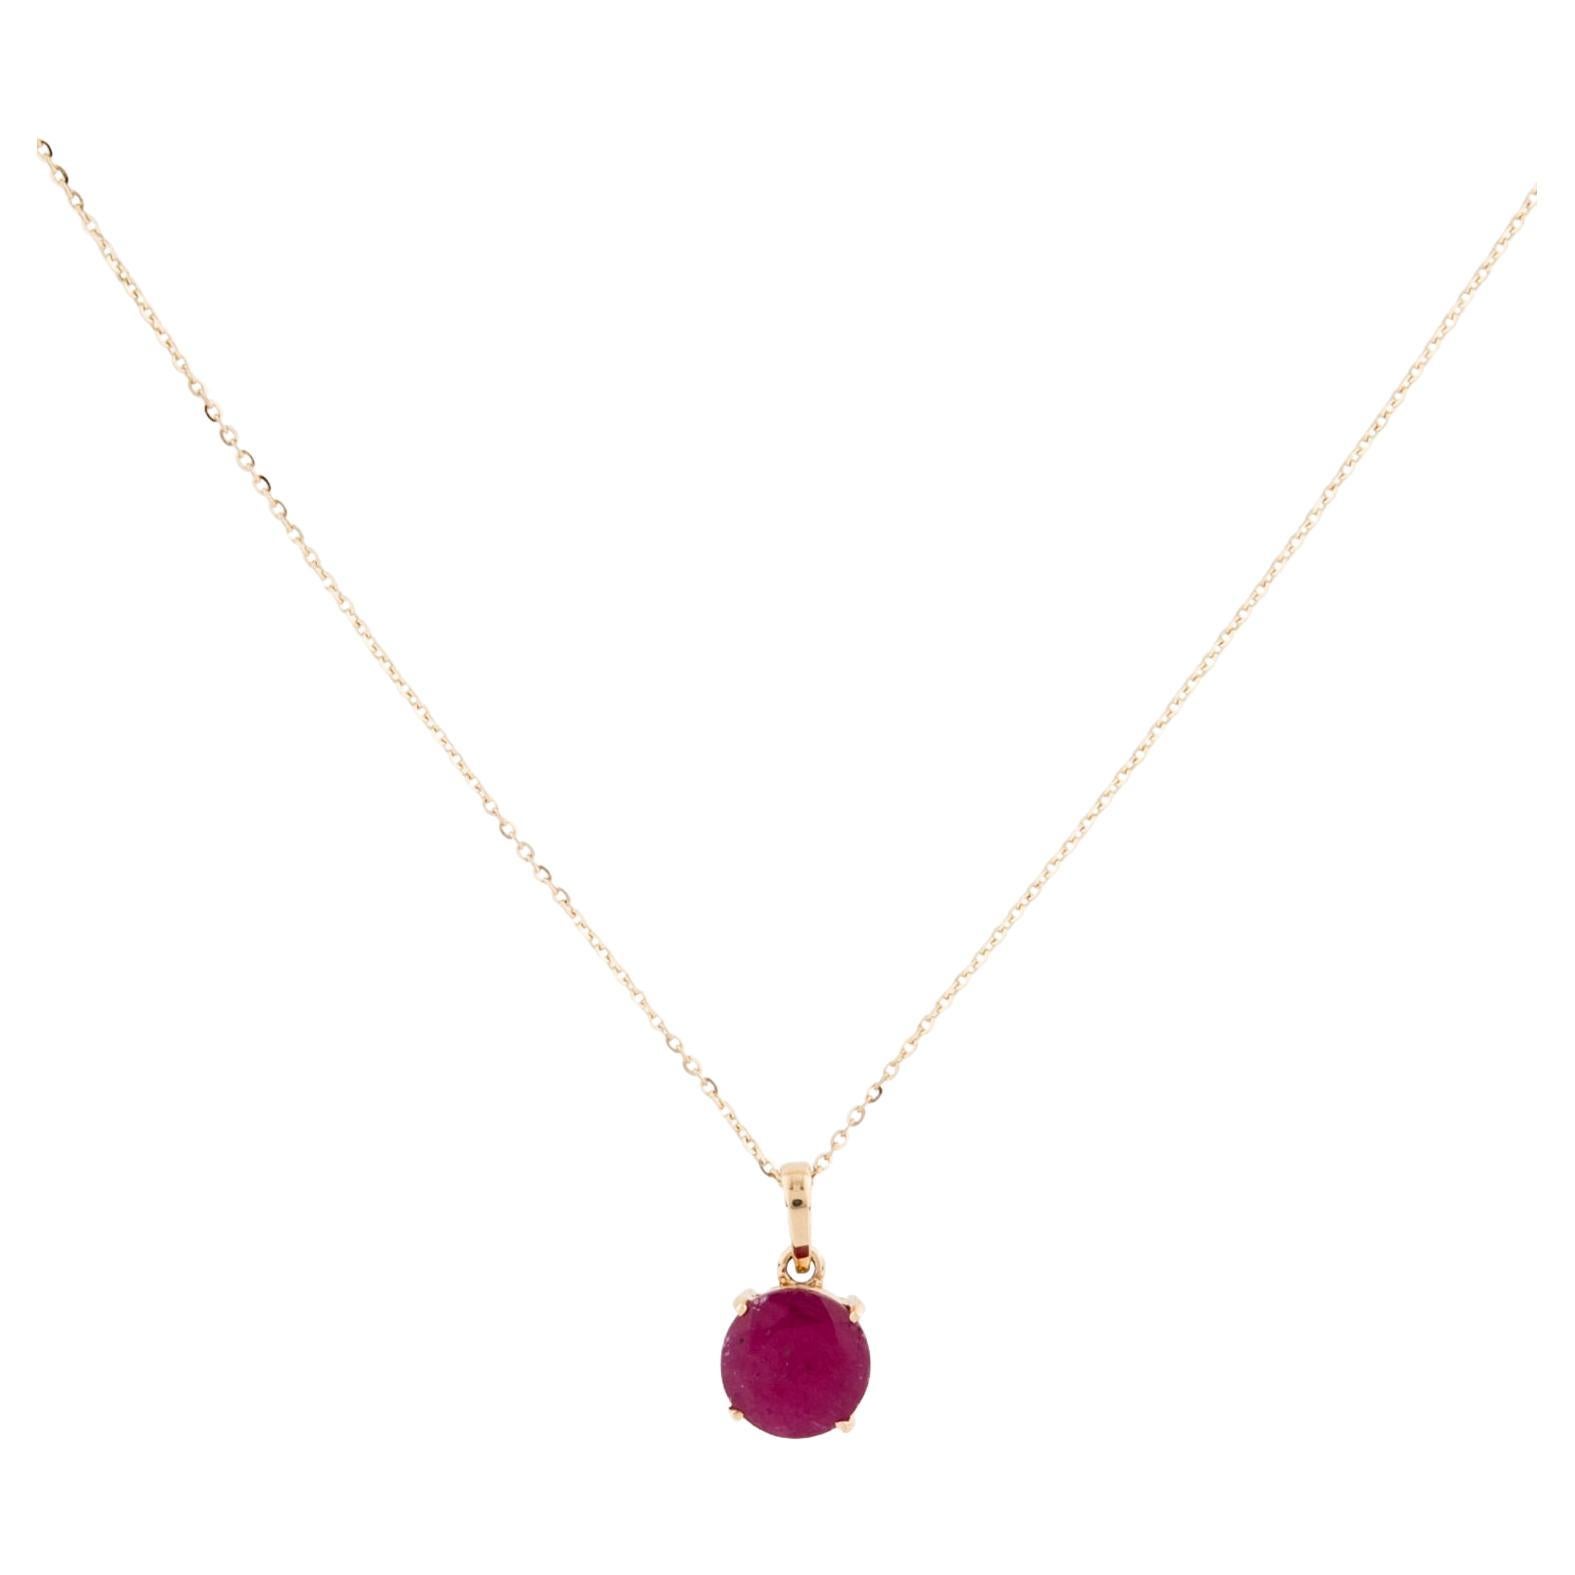 Exquisite 14K 1,21ct Rubin Anhänger Halskette - Elegant Edelstein funkelnden Akzent